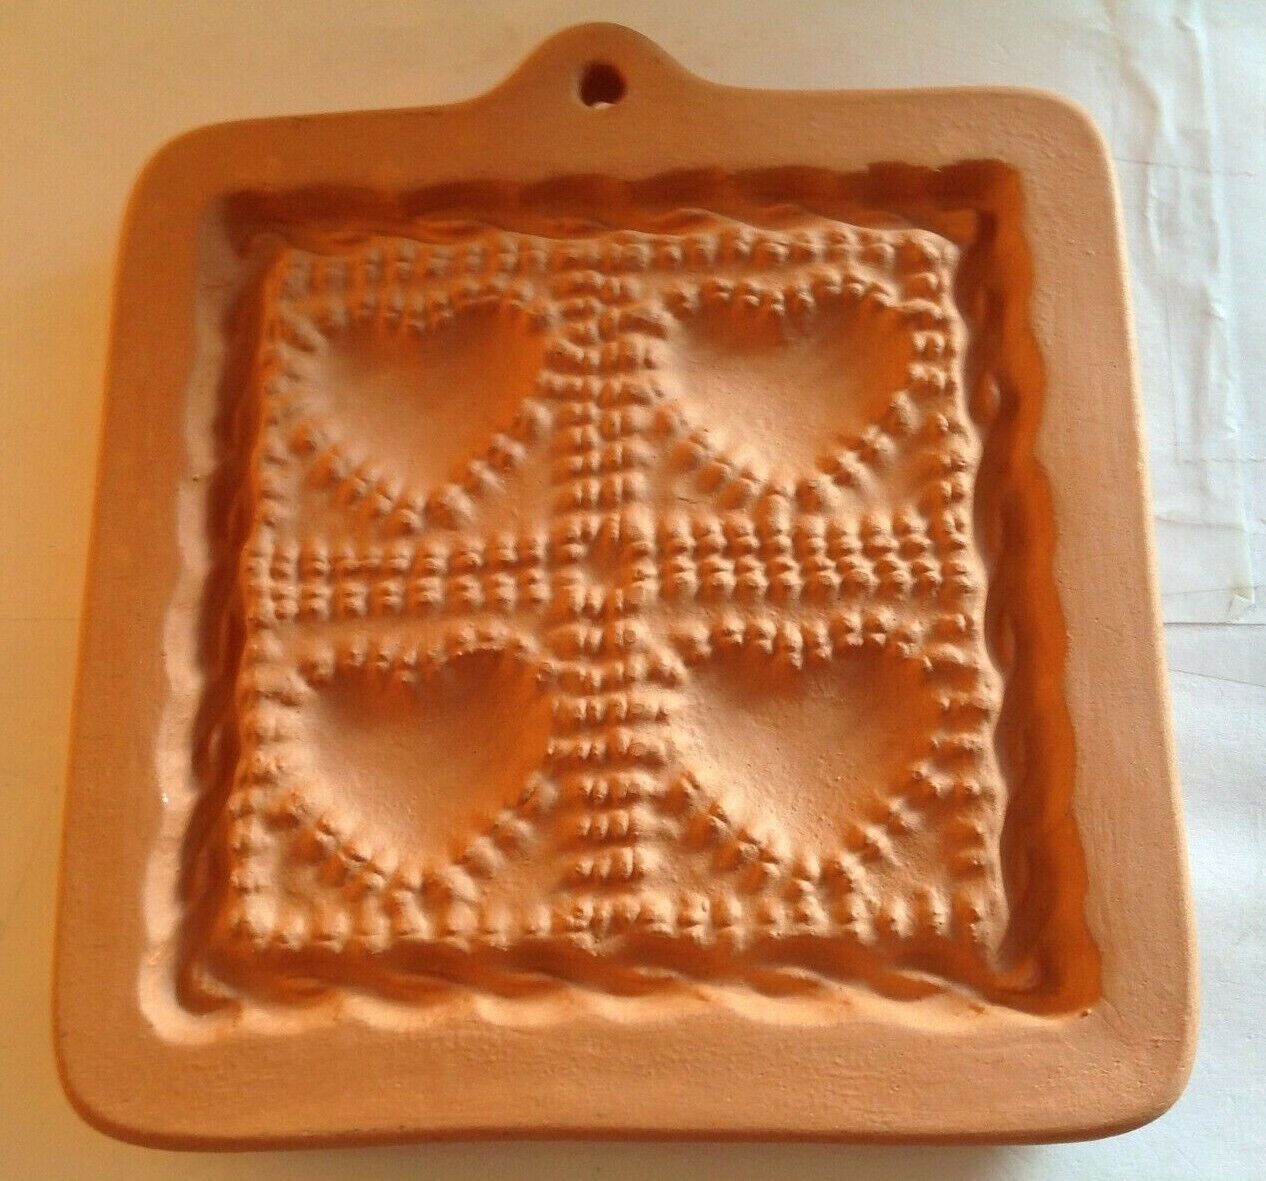 1992 Cotton Press – Valentine Hearts Small Shortbread Cookie Mold